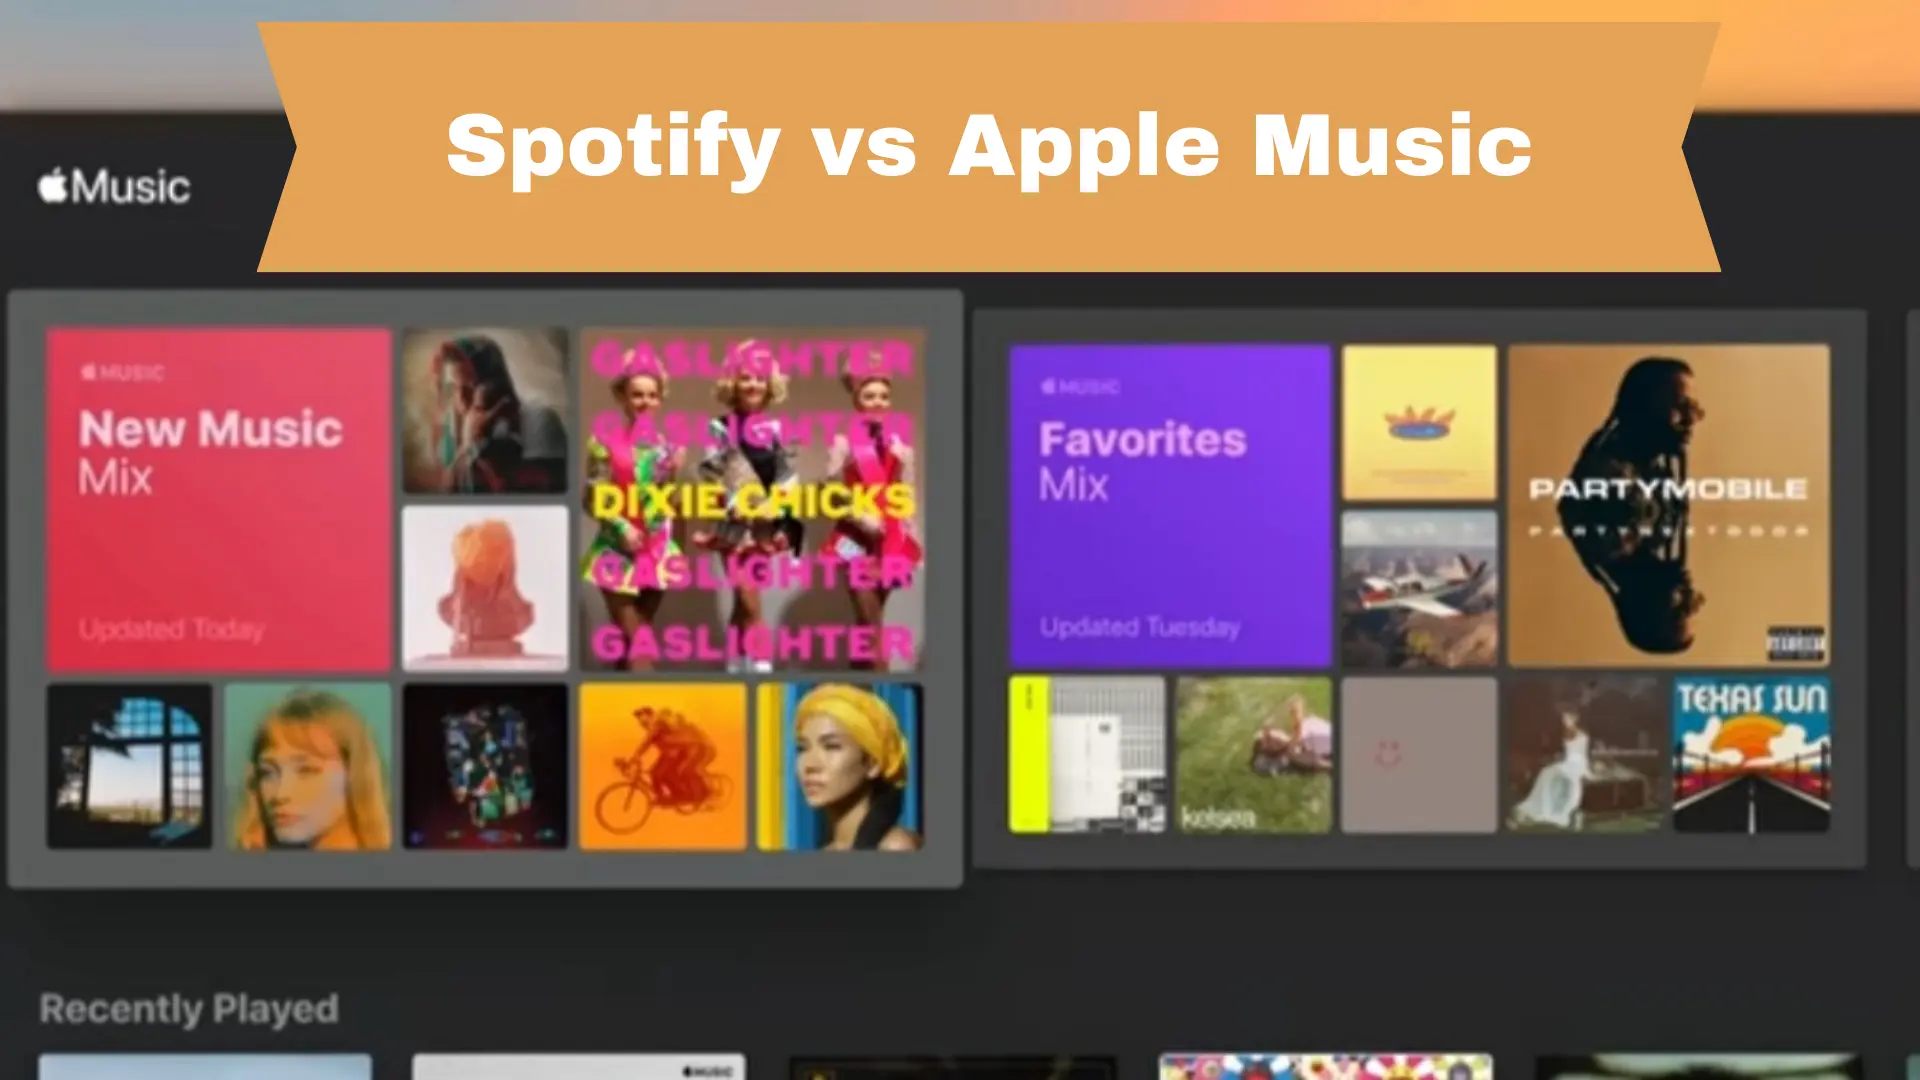 Exclusive comprehnsive between spotify vs Apple